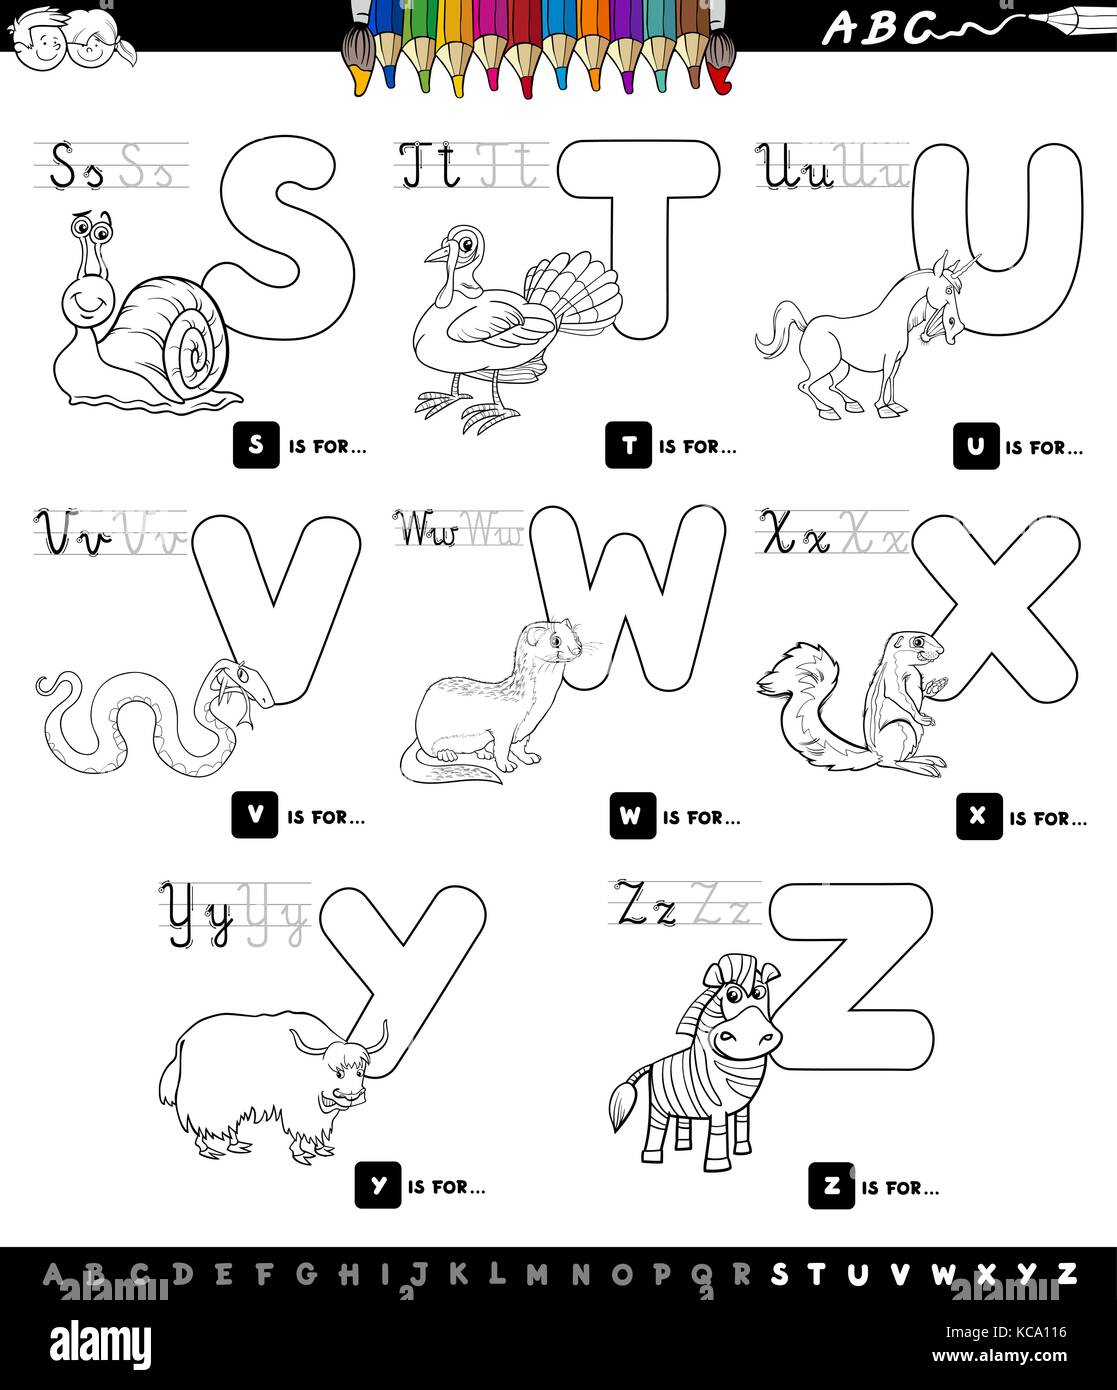 Cartoon noir et blanc illustration de l'alphabet en majuscules avec des caractères pour la lecture et l'écriture l'éducation pour les enfants de s à z Illustration de Vecteur